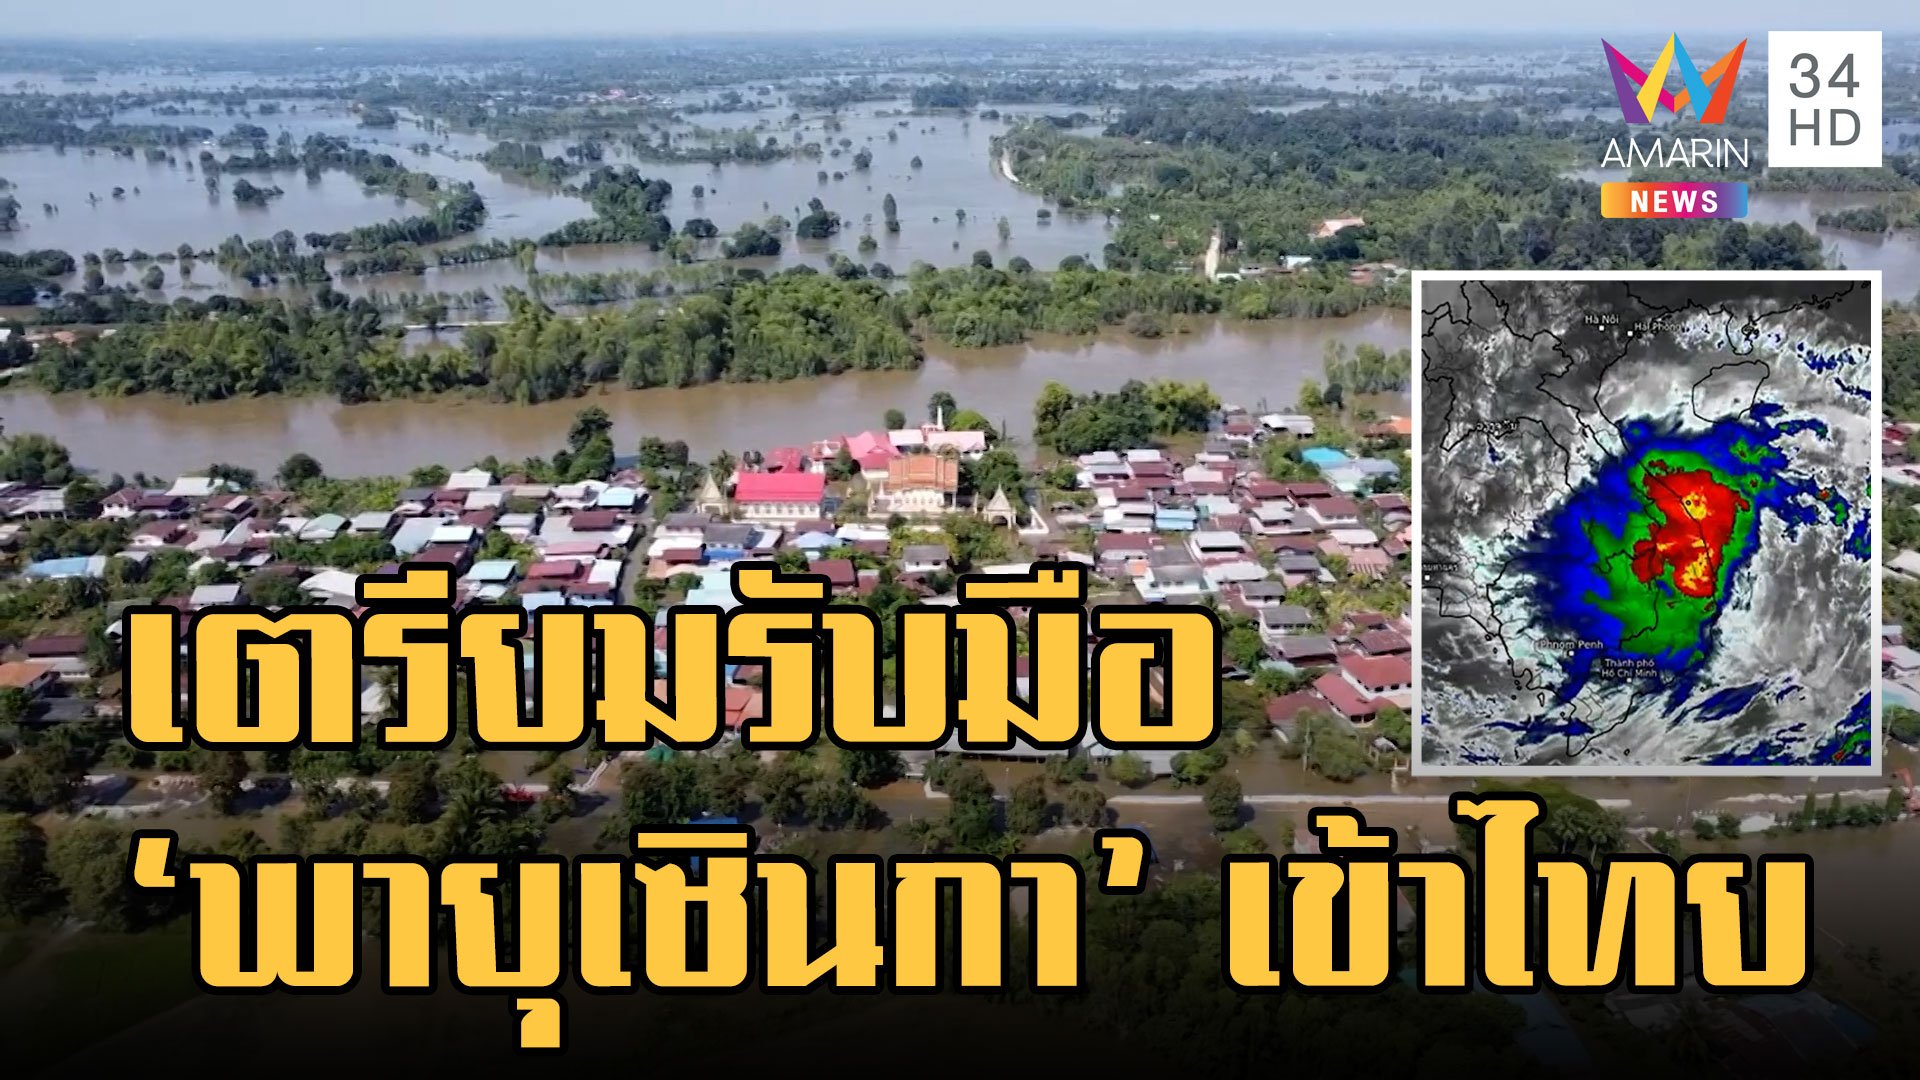 อุตุฯ เตือน พายุเซินกา จ่อเข้าไทยวันนี้ 15 ต.ค. | ข่าวอรุณอมรินทร์ | 15 ต.ค. 65 | AMARIN TVHD34